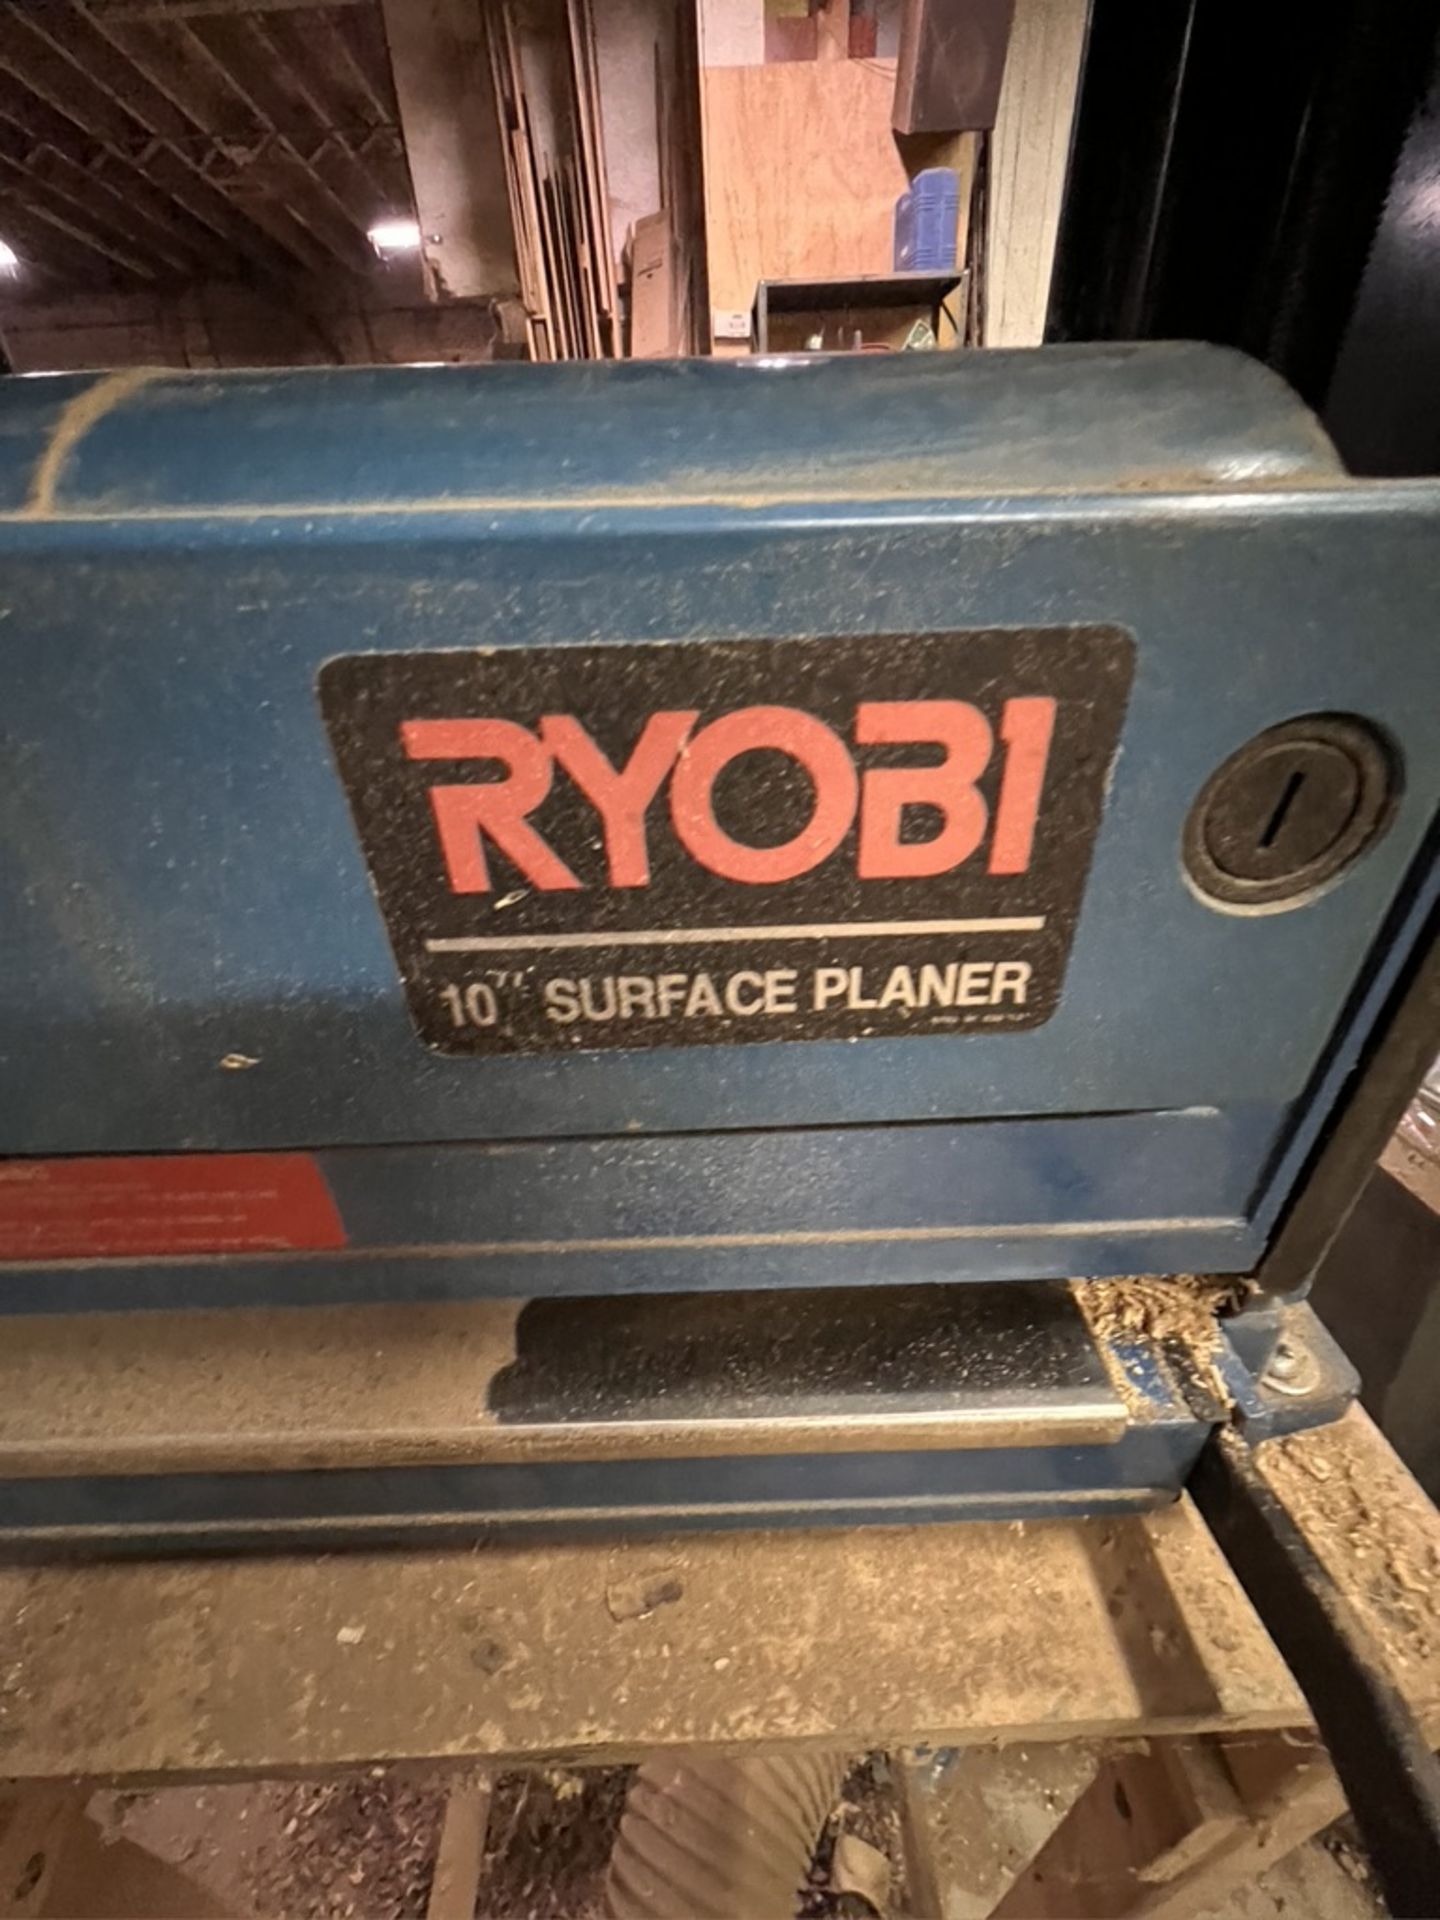 RYOBI 10" SURFACE PLANER, MODEL AP-10, S/N 122551 - Image 3 of 5